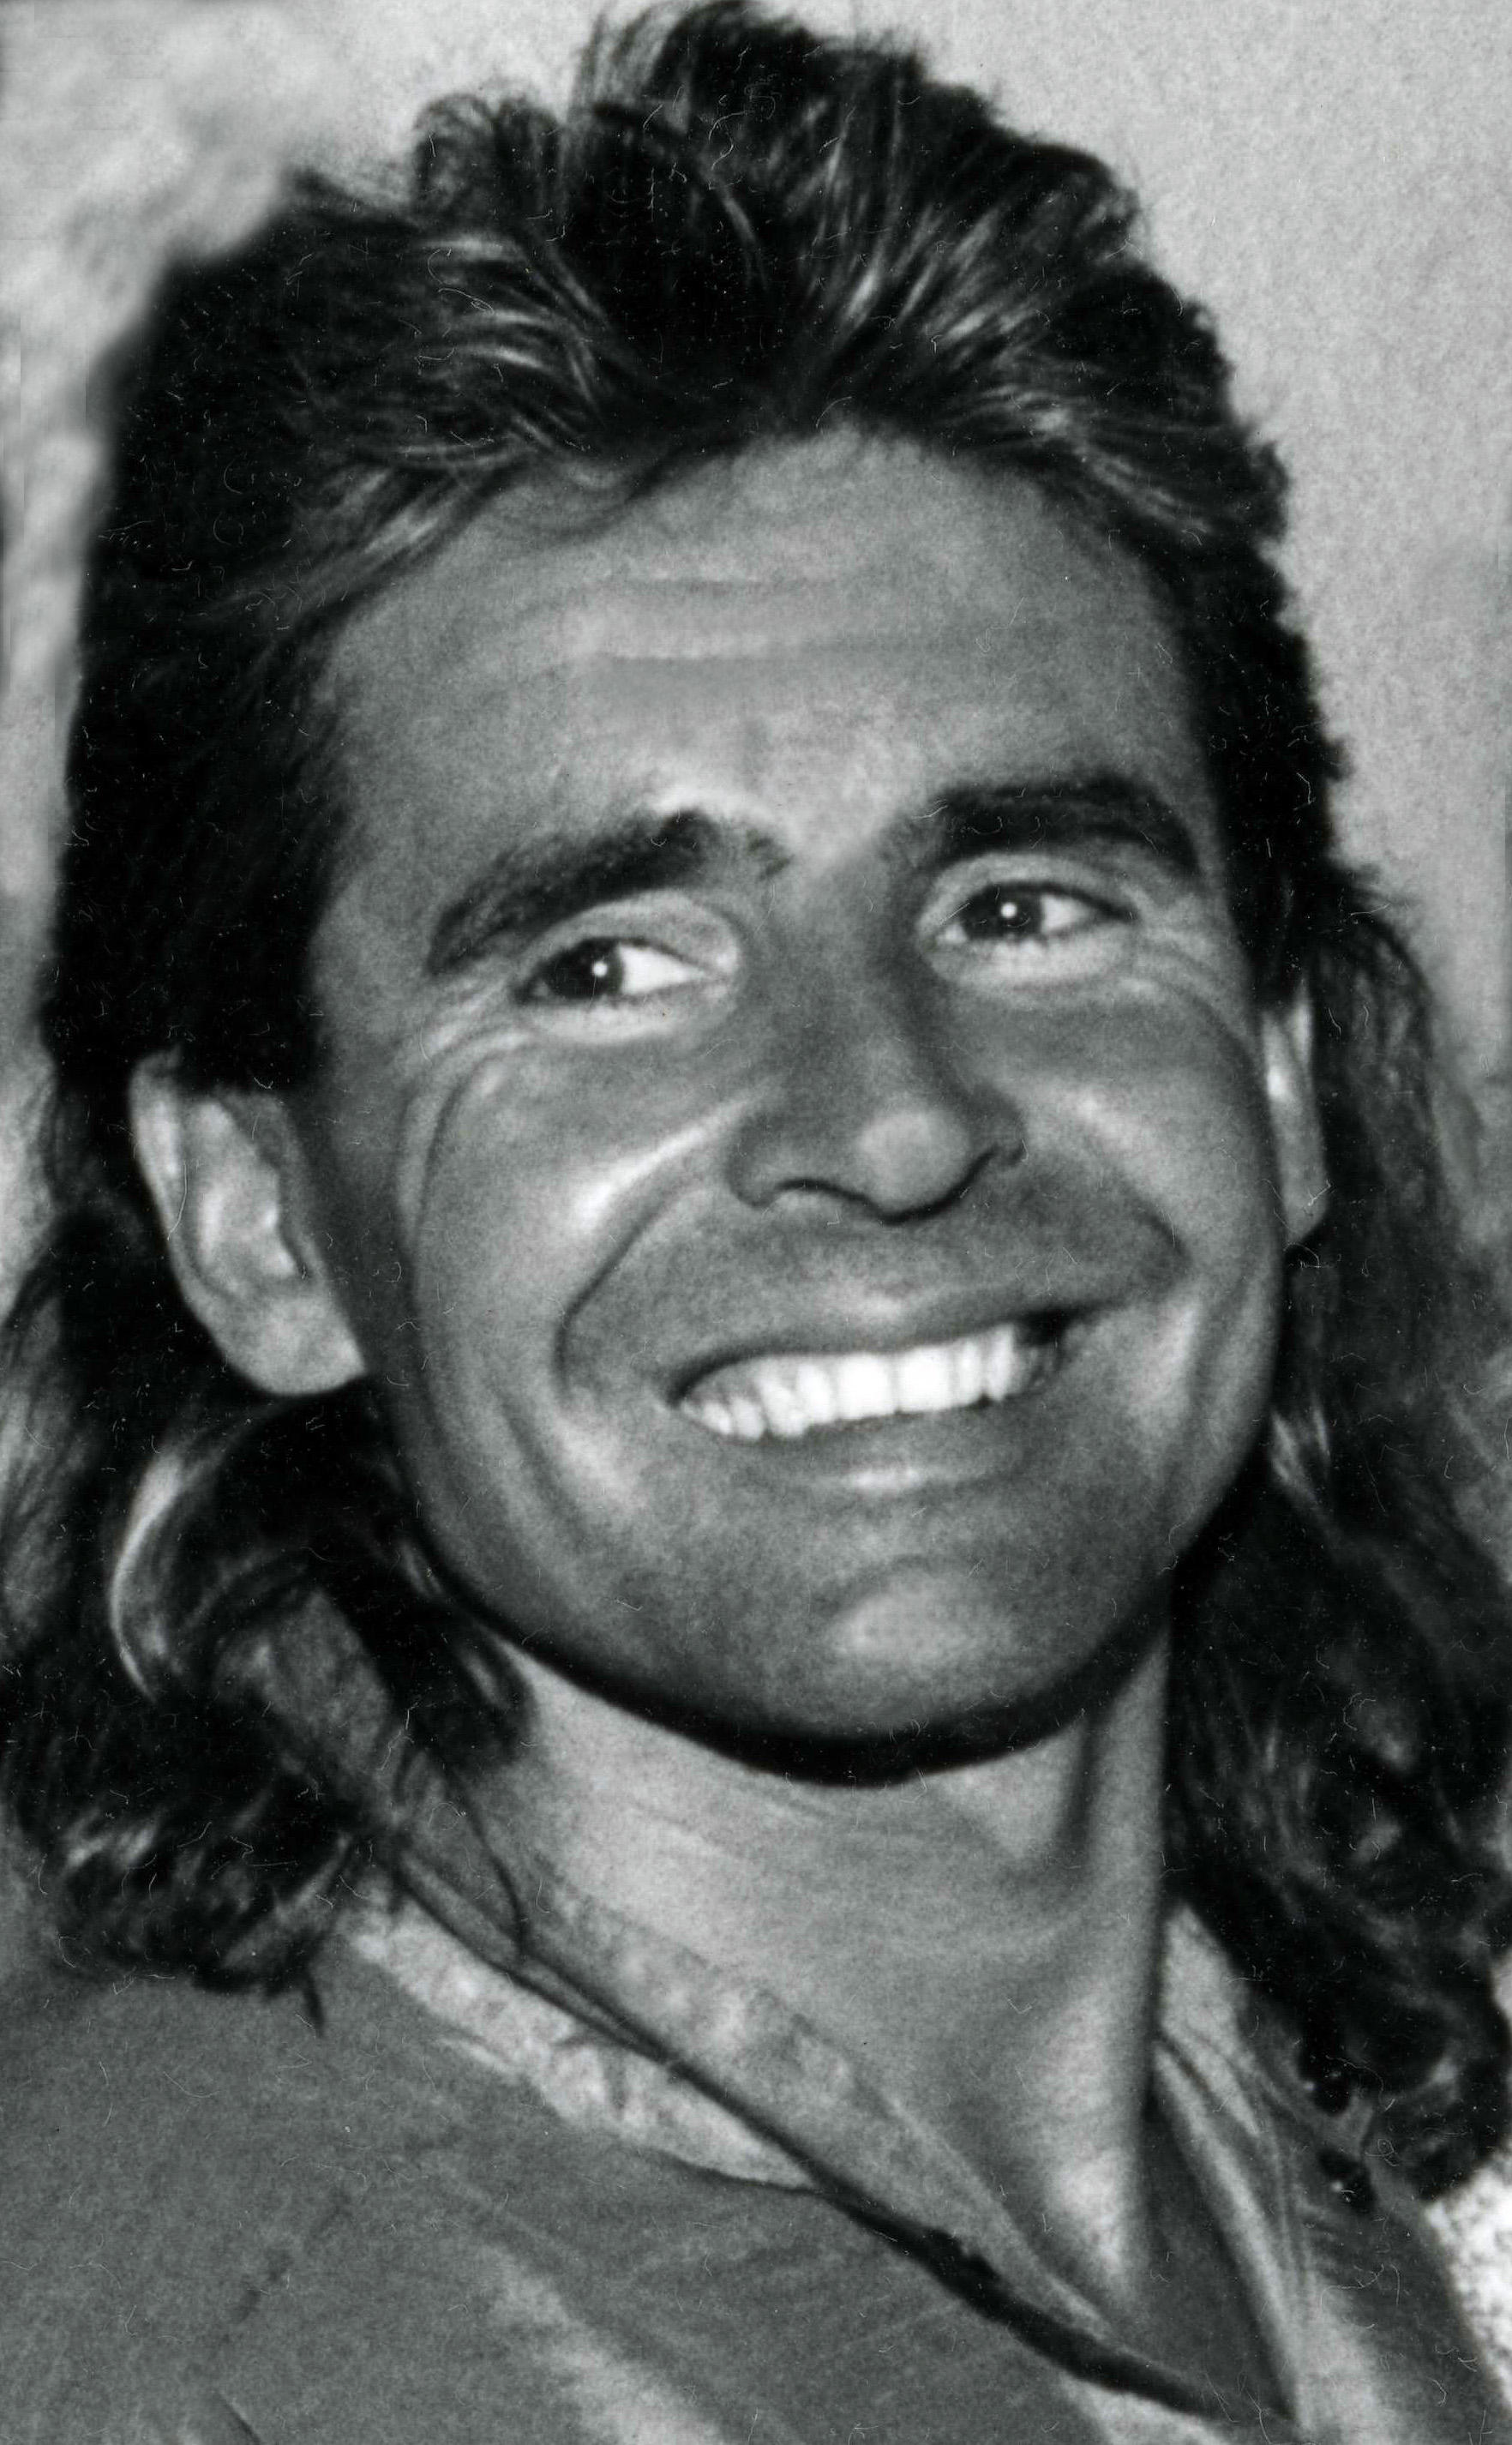 Davy Jones 1986